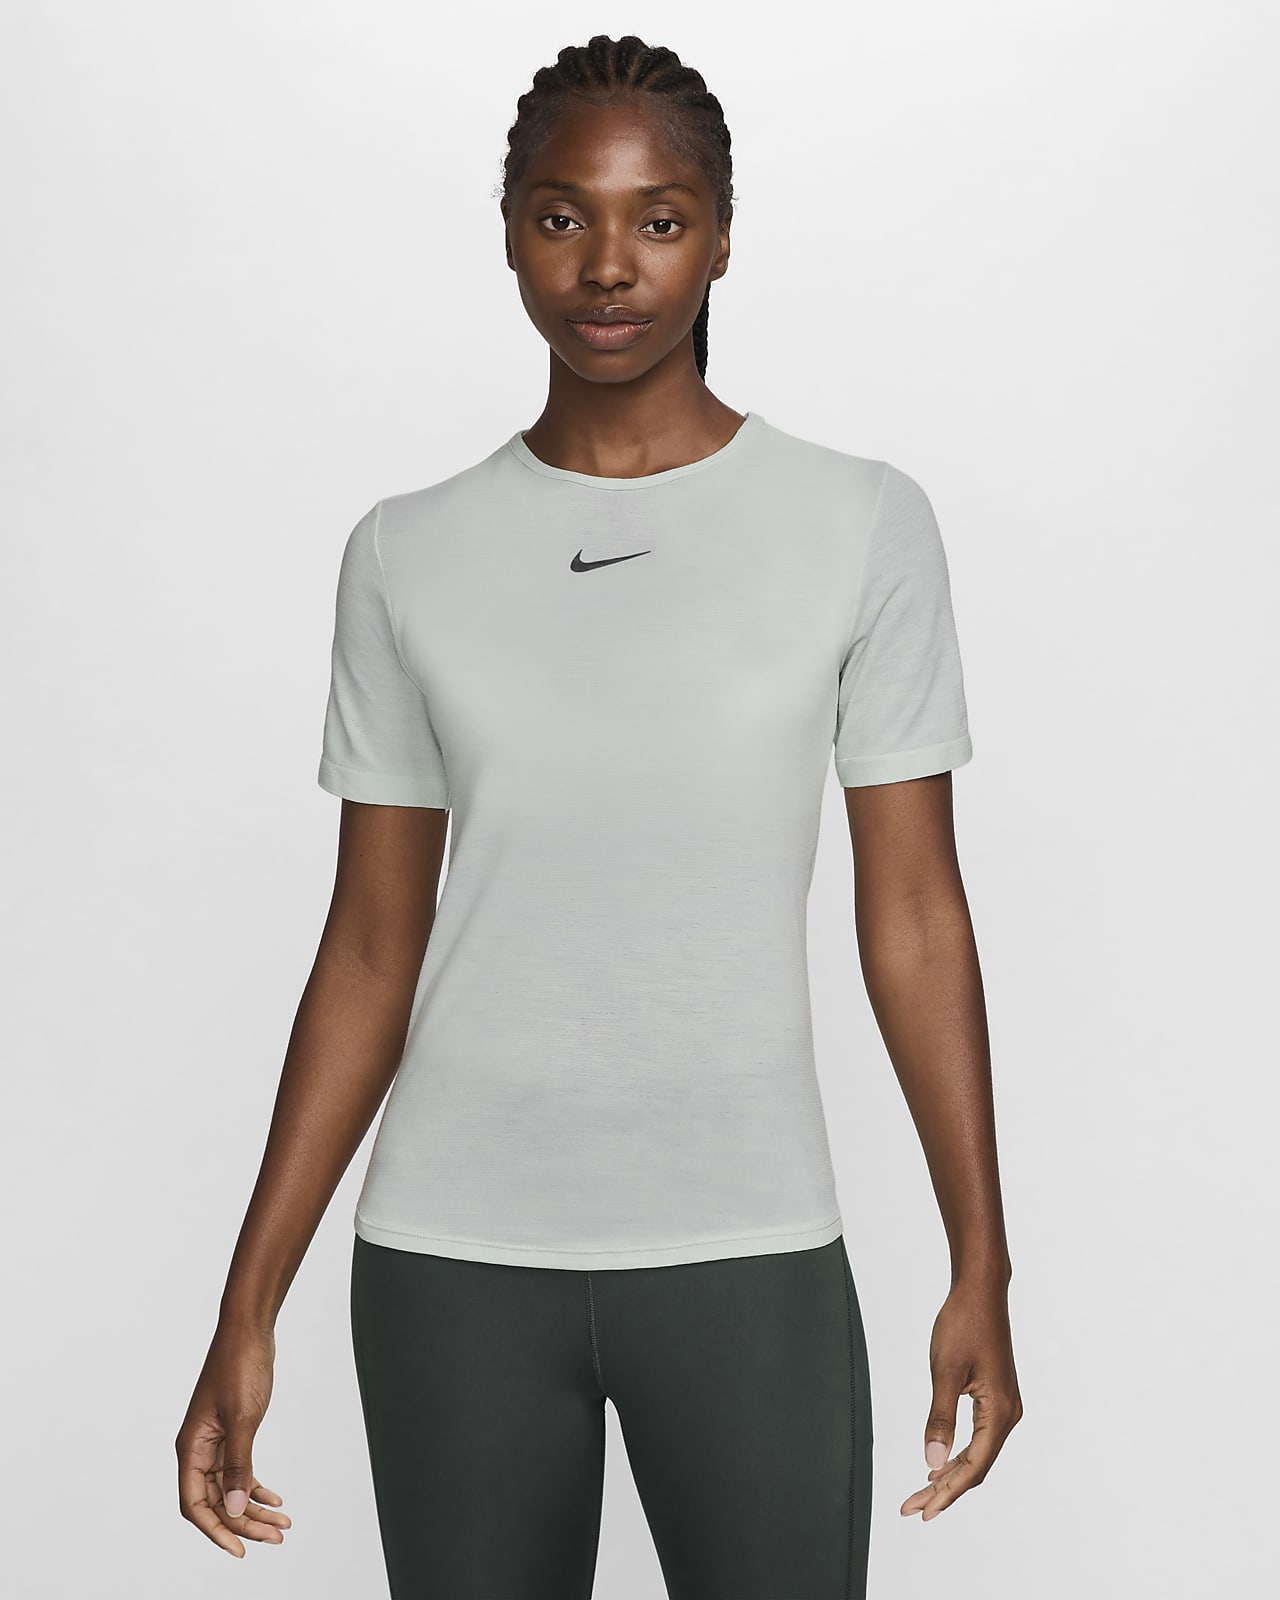 Nike Swift Wool Dri-FIT rövid ujjú női futófelső